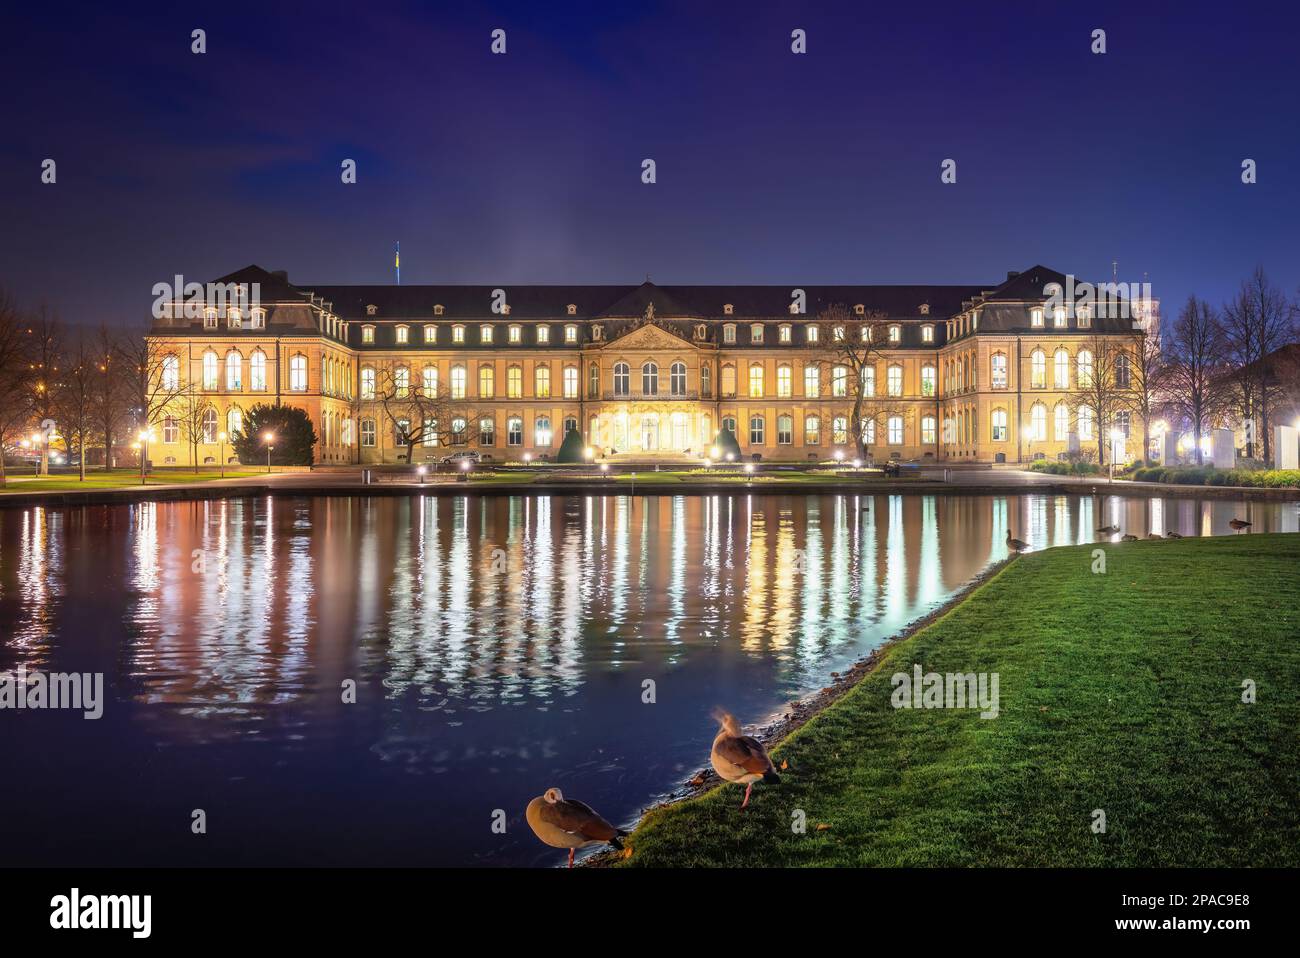 Neues Schloss (Palazzo nuovo) e il lago Eckensee di notte - Stoccarda, Germania Foto Stock